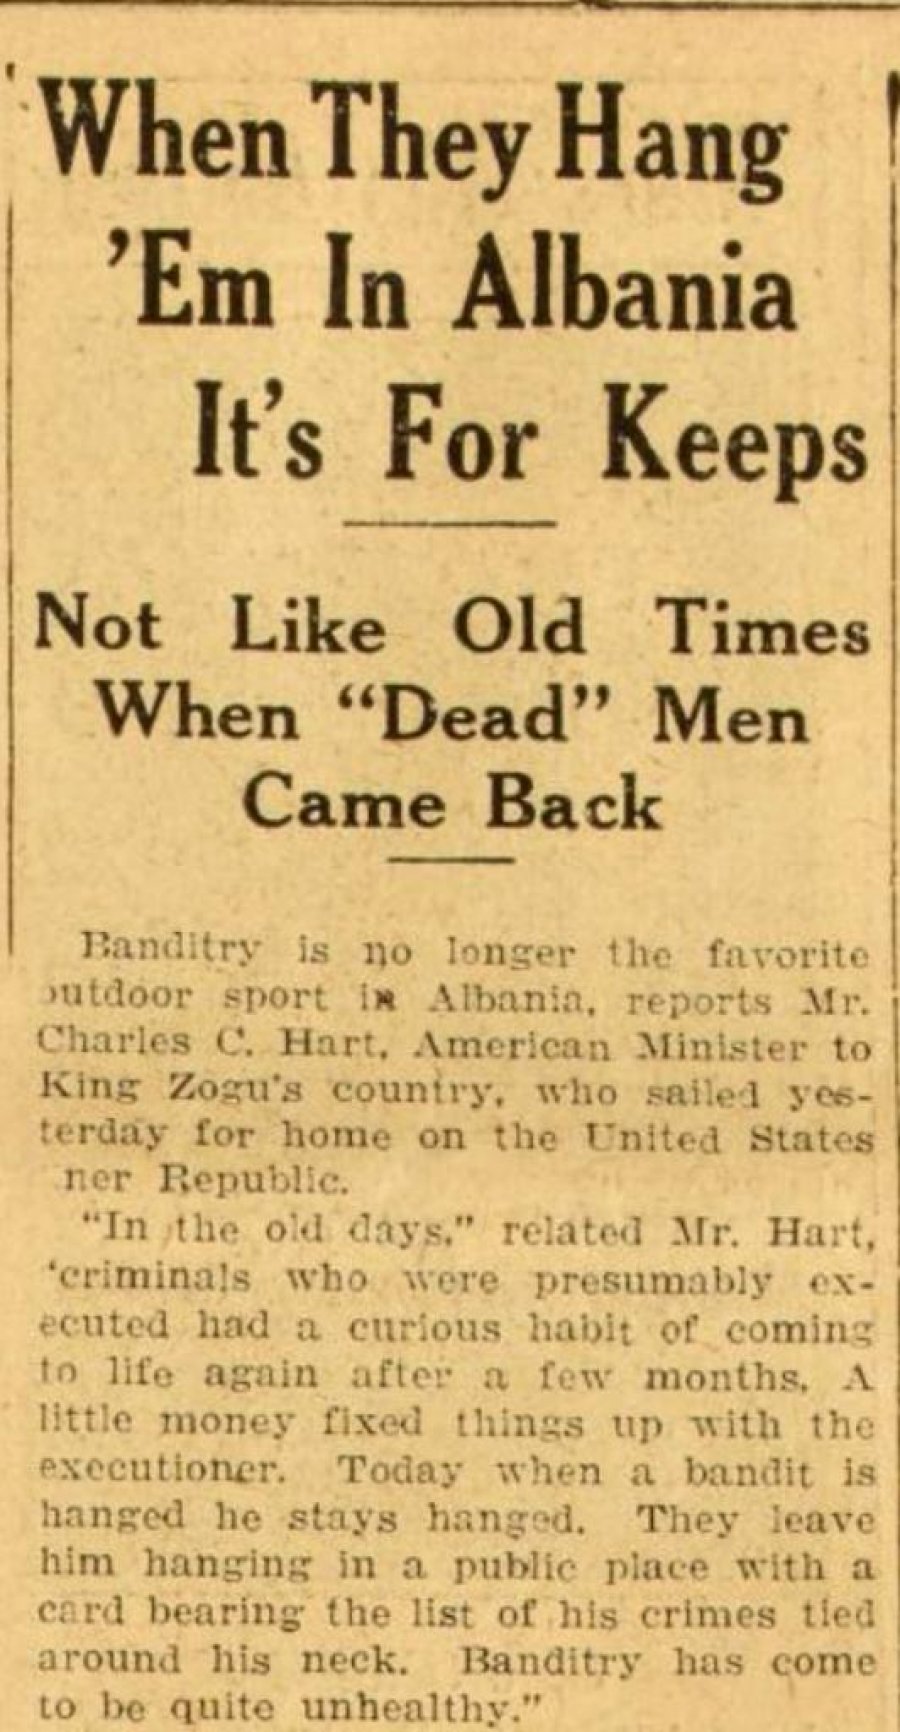 Në 1929: Kur i varin në Shqipëri, ndodh me të vërtetë - Jo si në kohët e vjetra, kur 'të vdekurit' ktheheshin